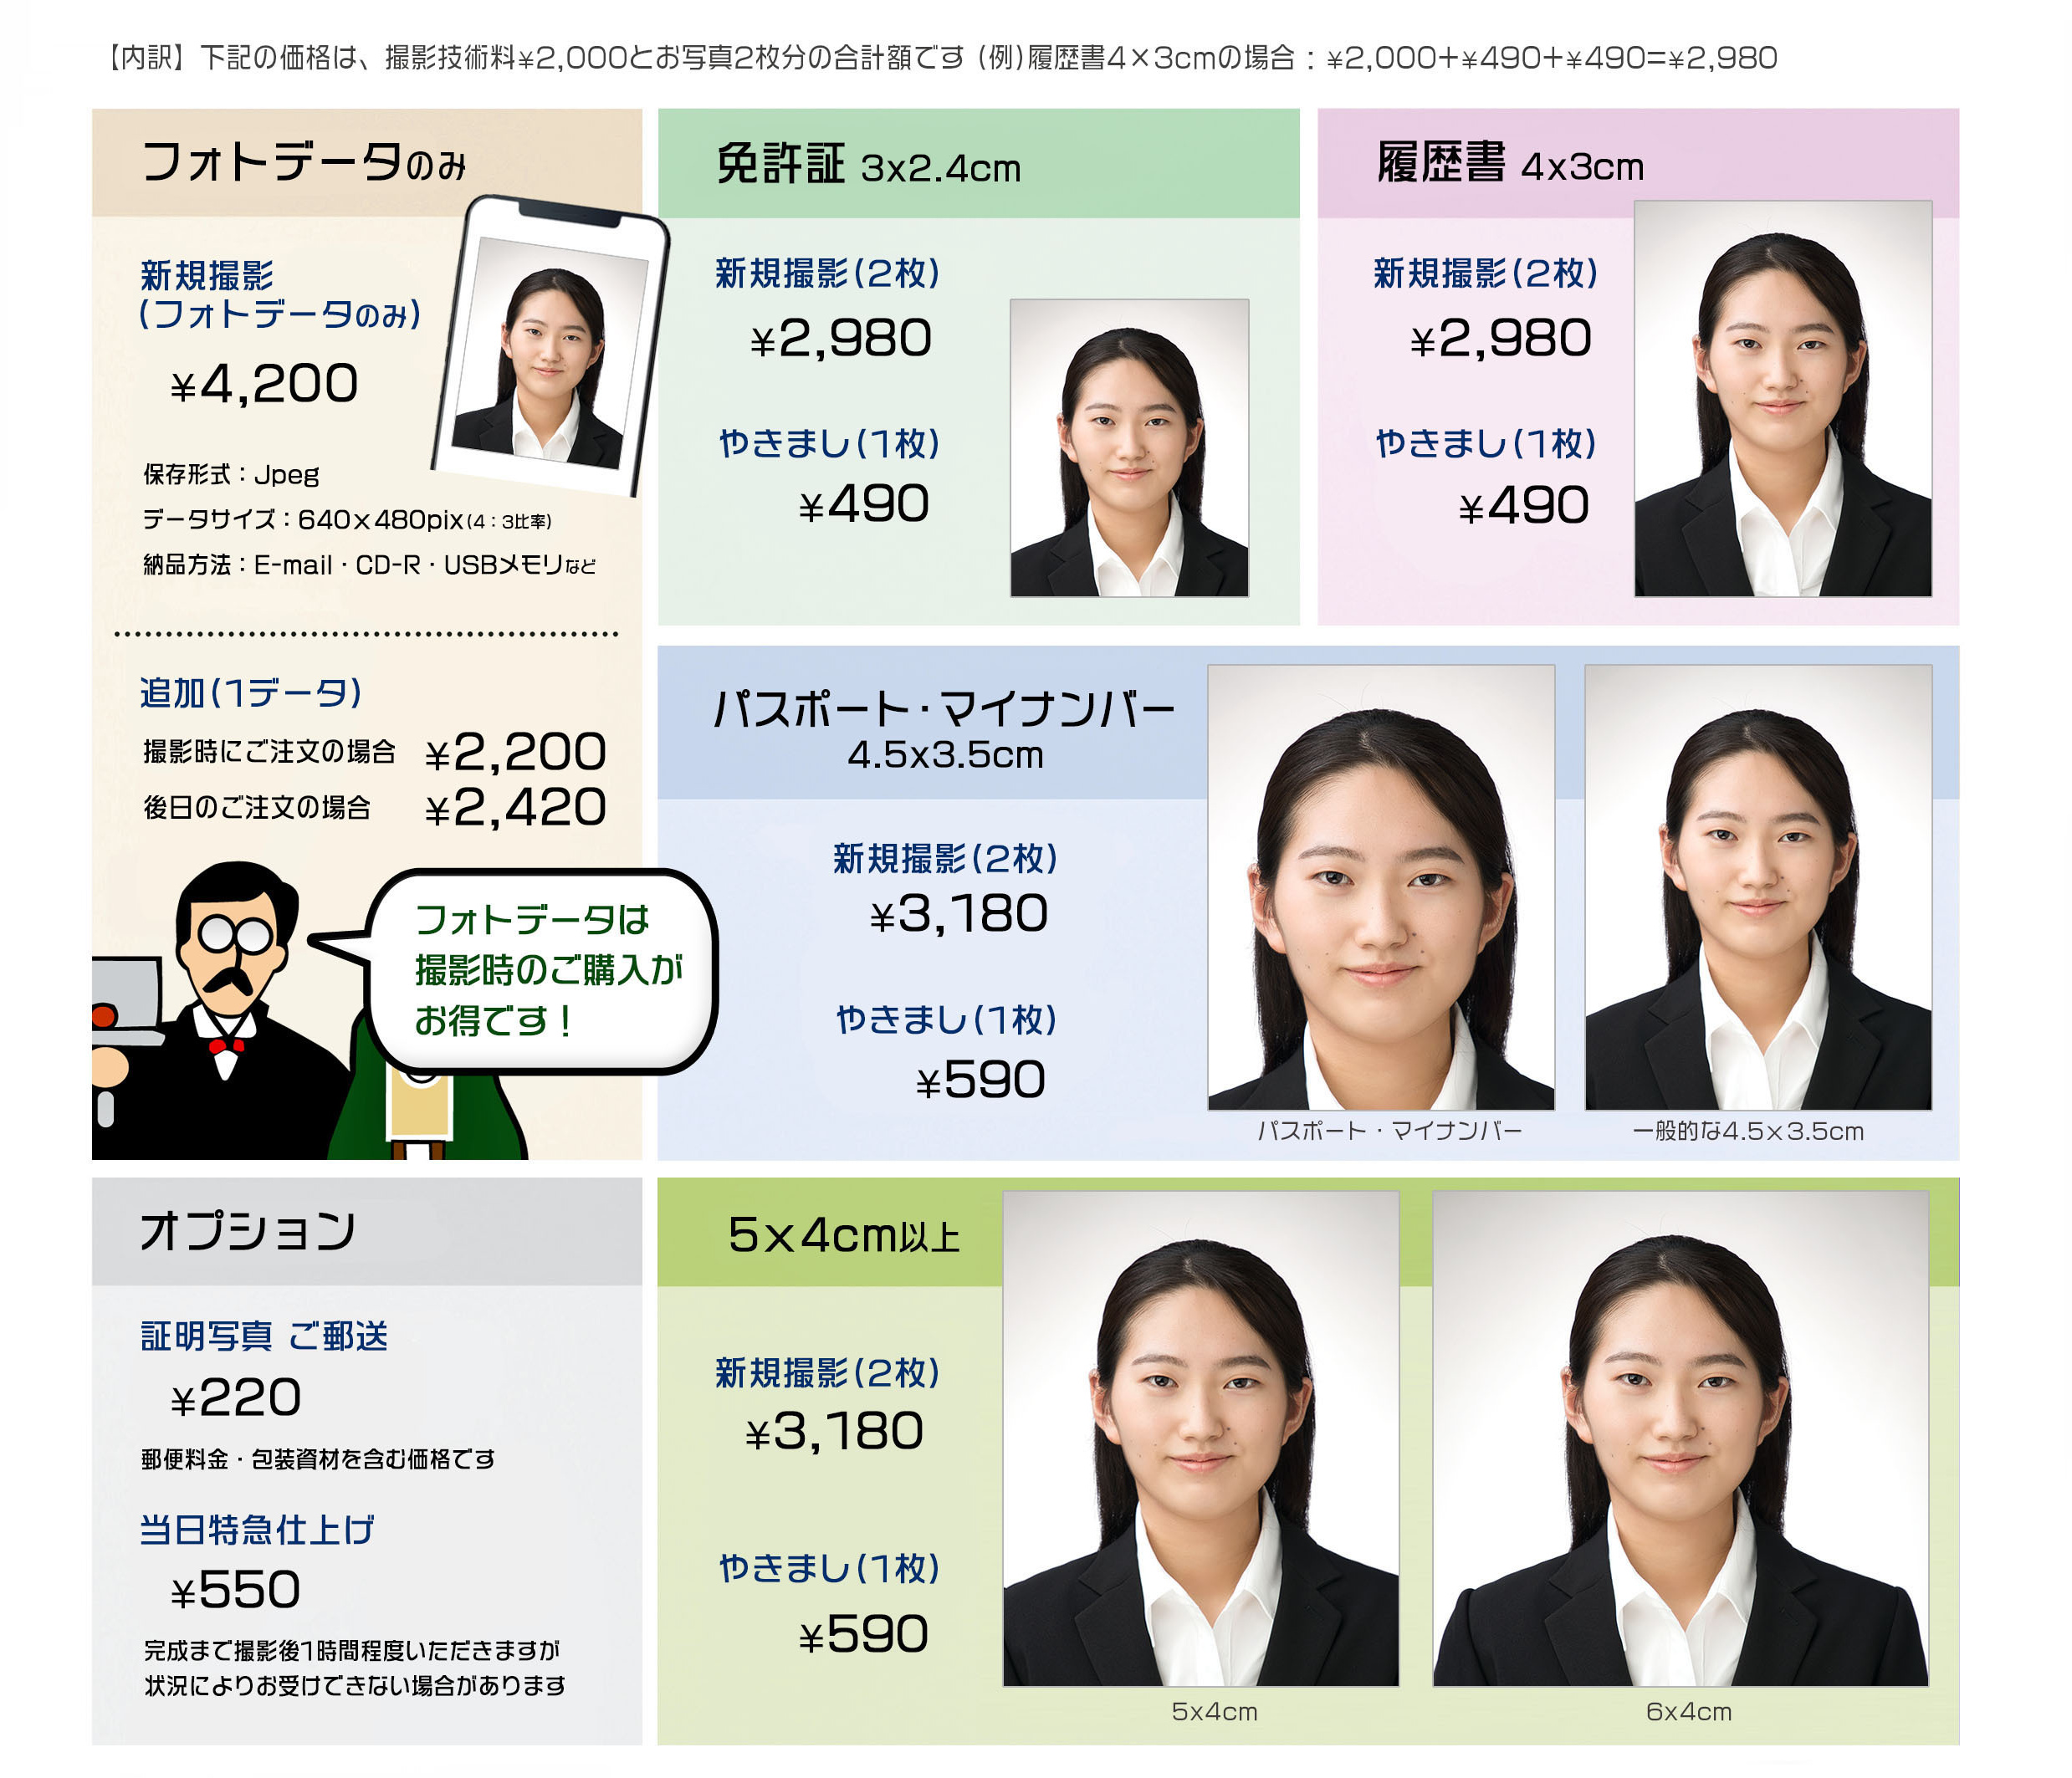 岡山市 証明写真 免許証 履歴書 デジタルデータ対応 パスポート マイナンバー 5×4 4×3 ハローワーク用 3×2.4 3×2.5 各国ビザ フォトデータ